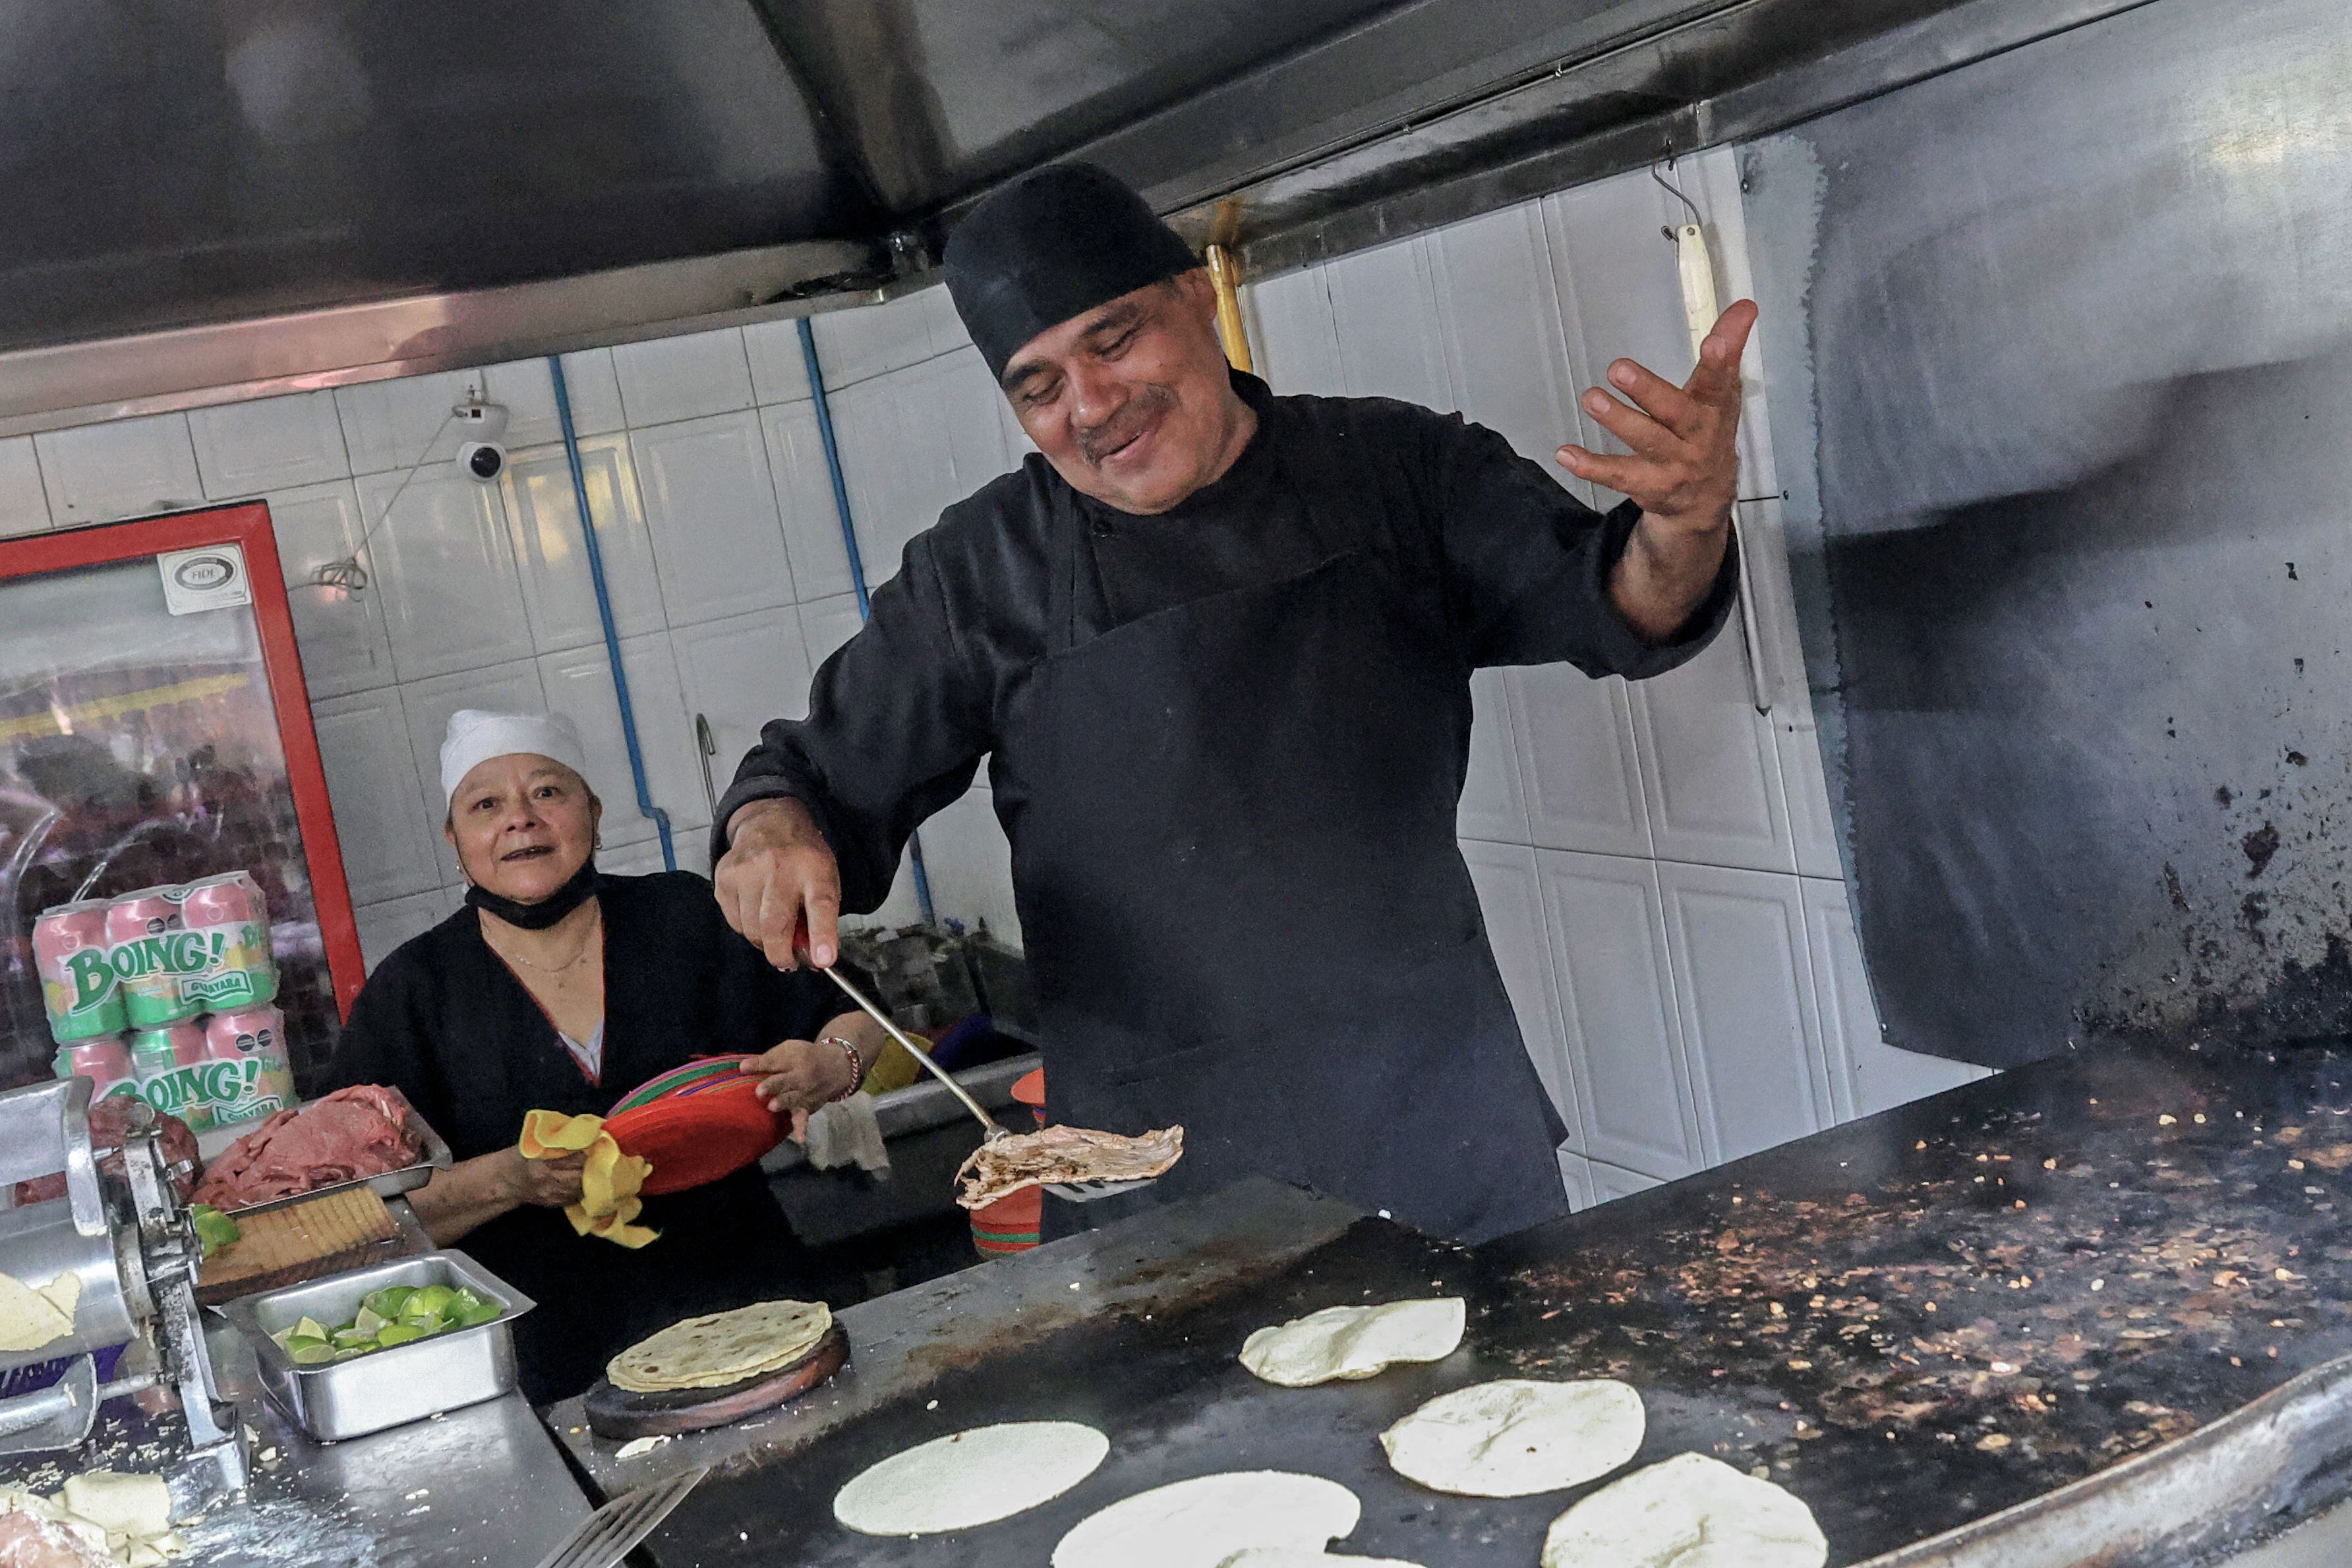 El chef Arturo Rivera Martínez, quien lleva al menos dos décadas trabajando en El Califa de León, recibió el pasado miércoles 15 de mayo la famosa estrella Michelin mientras servía sus populares tacos.